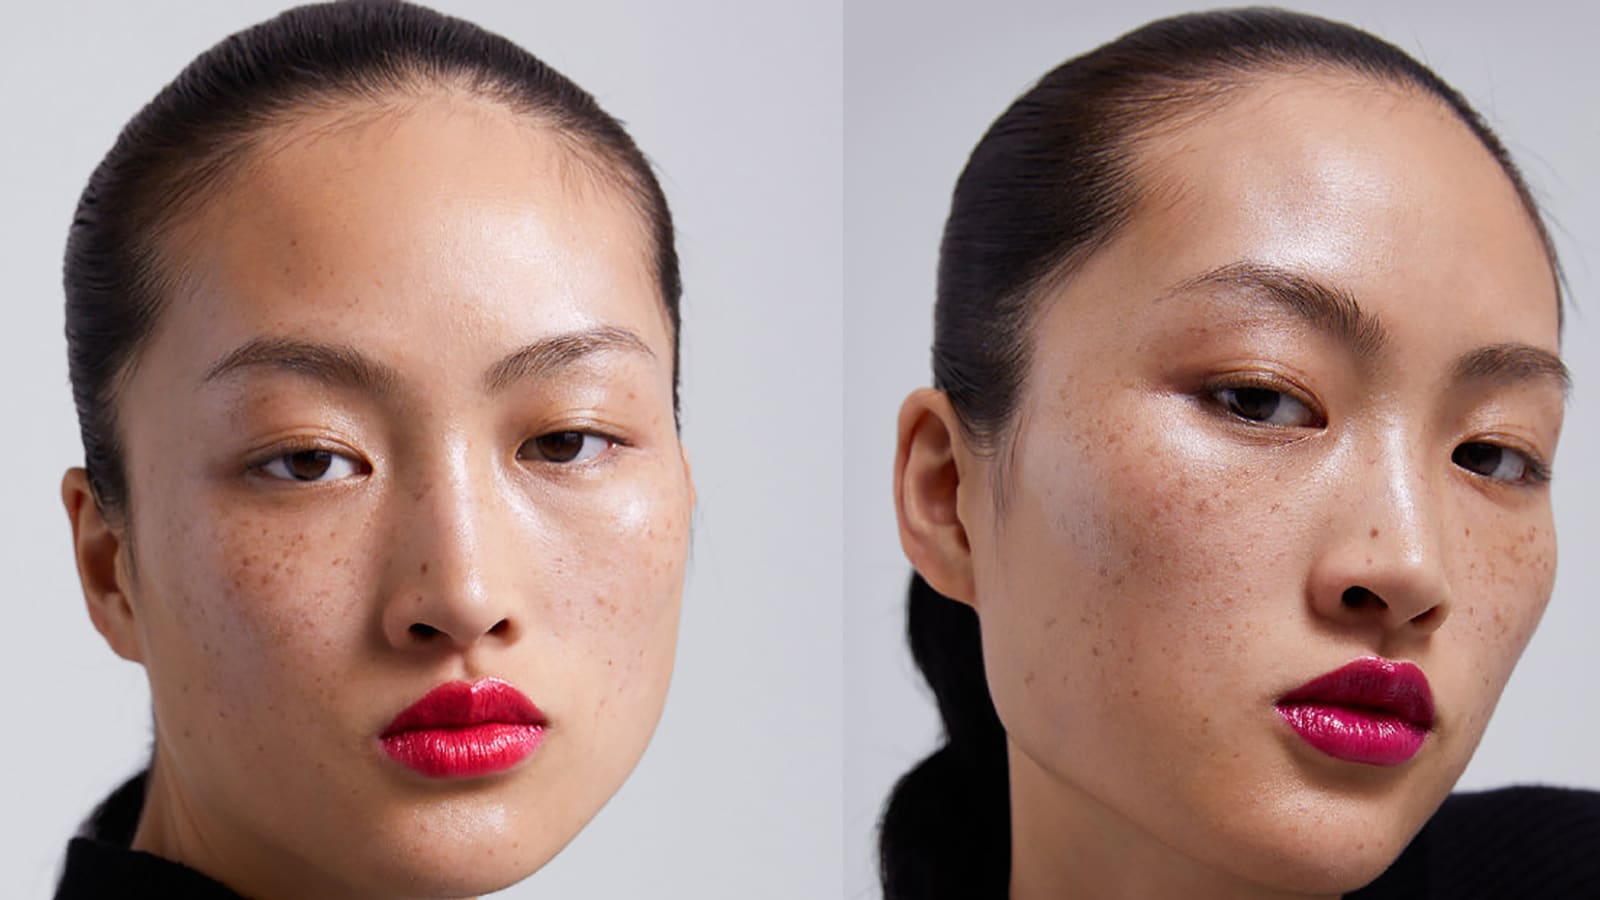 حملة لـ"زارا" تشعل الجدل حول النمش ومعايير الجمال في الصين